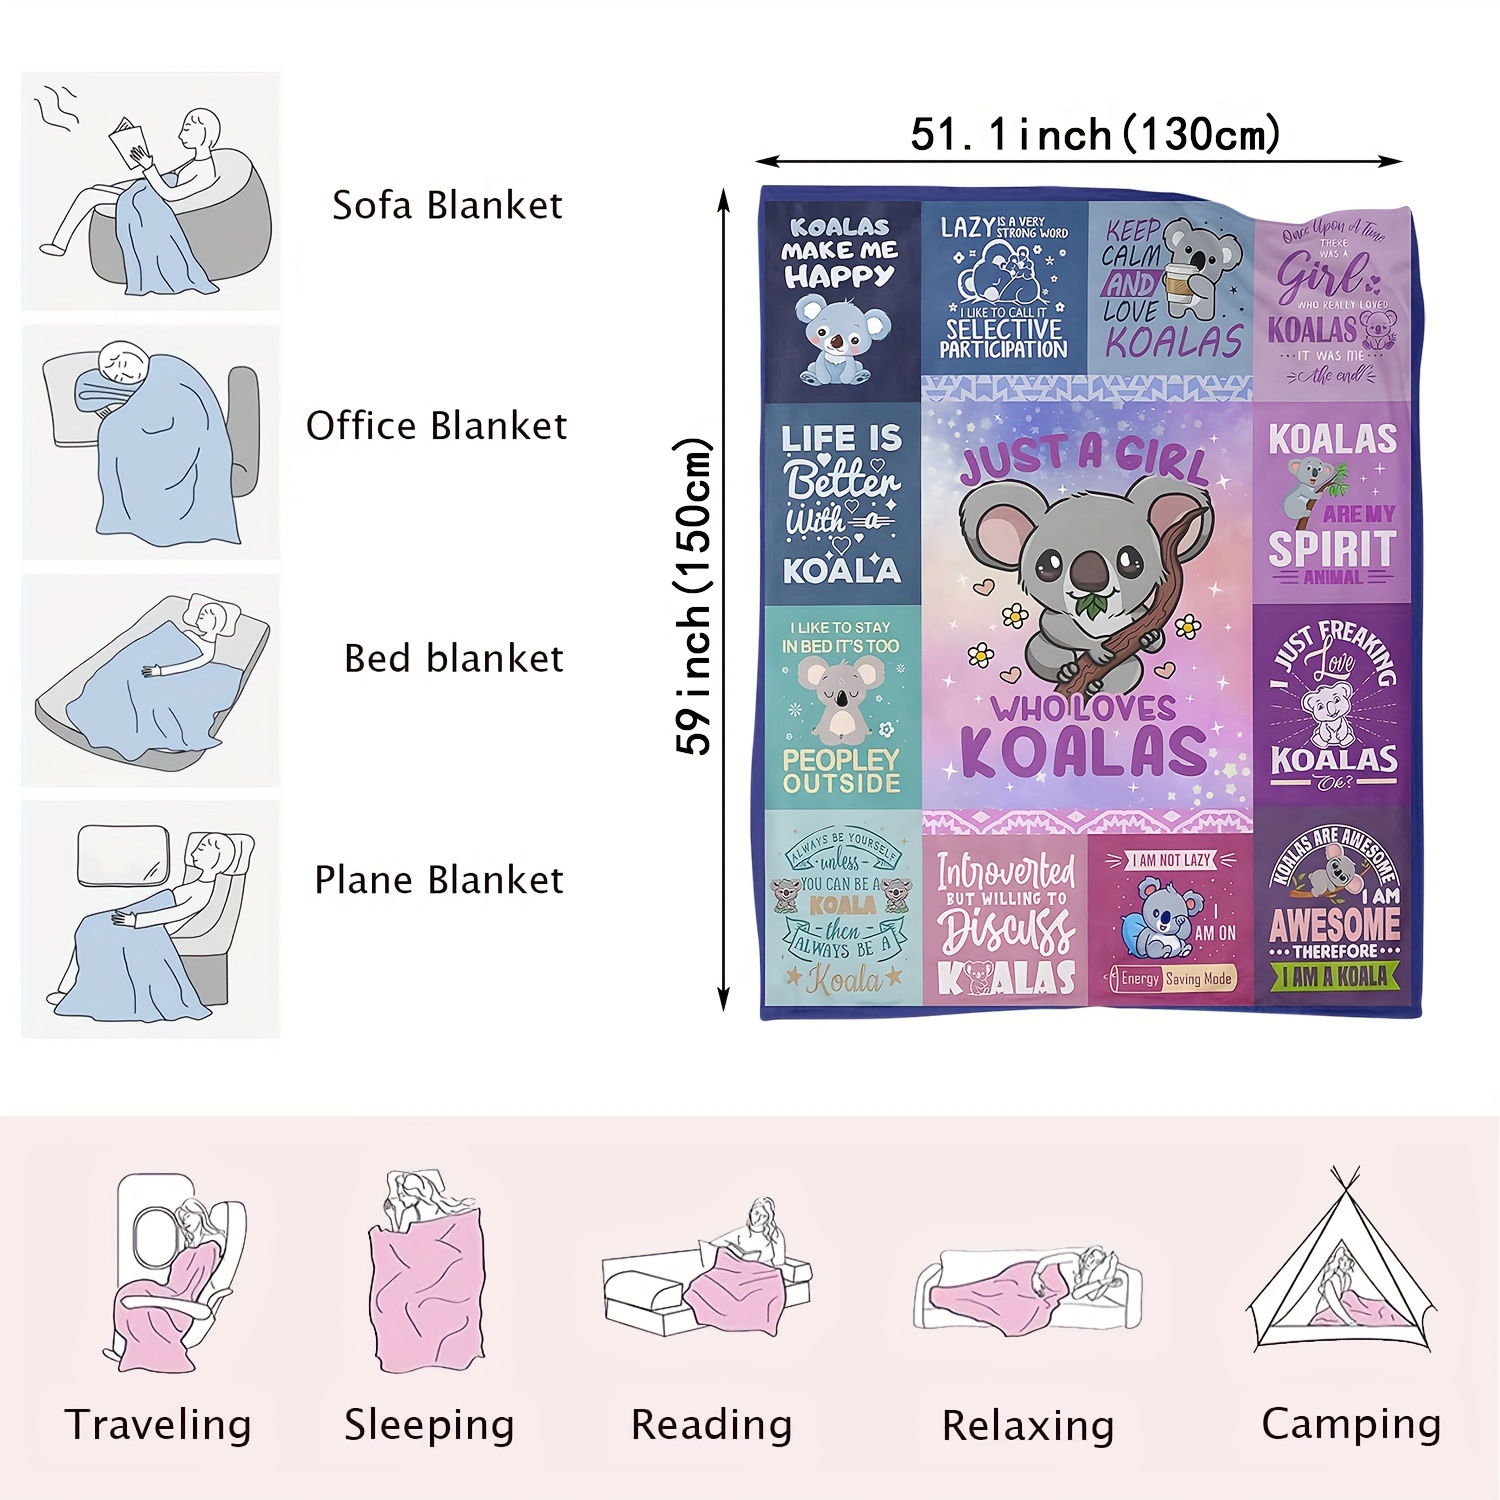 Hudodmn Koala Gifts for Girls, Koala Blanket, Koala Gifts, Gifts for Koala  Lovers, Koala Lover Gifts Ideas, Koala Lovers Birthday Gifts, Just a Girl